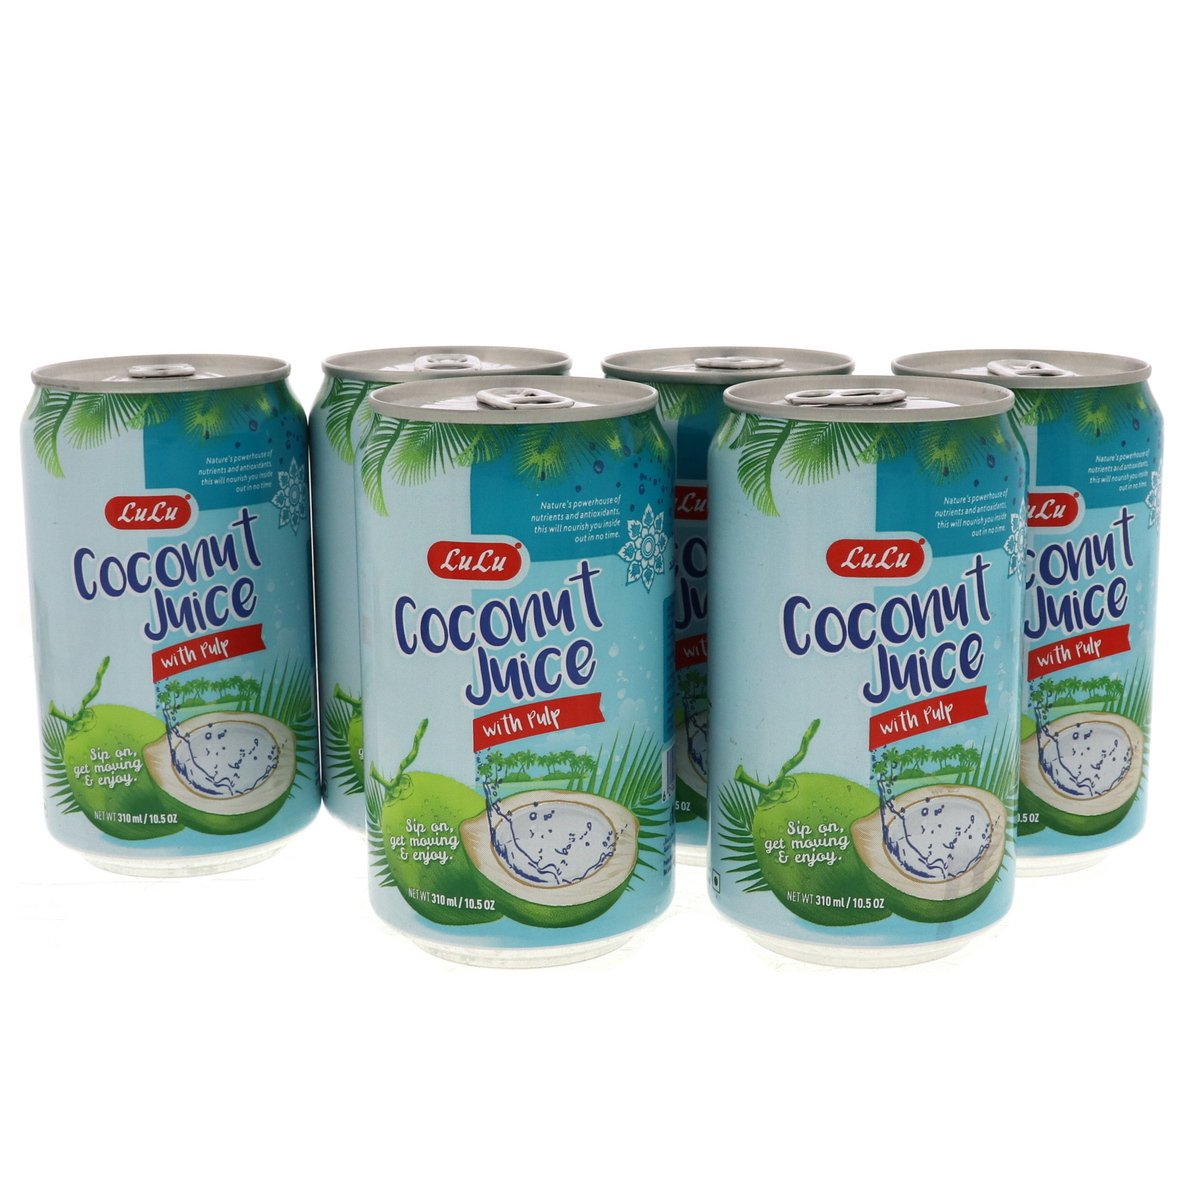 LuLu Coconut Juice With Pulp 6 x 310 ml